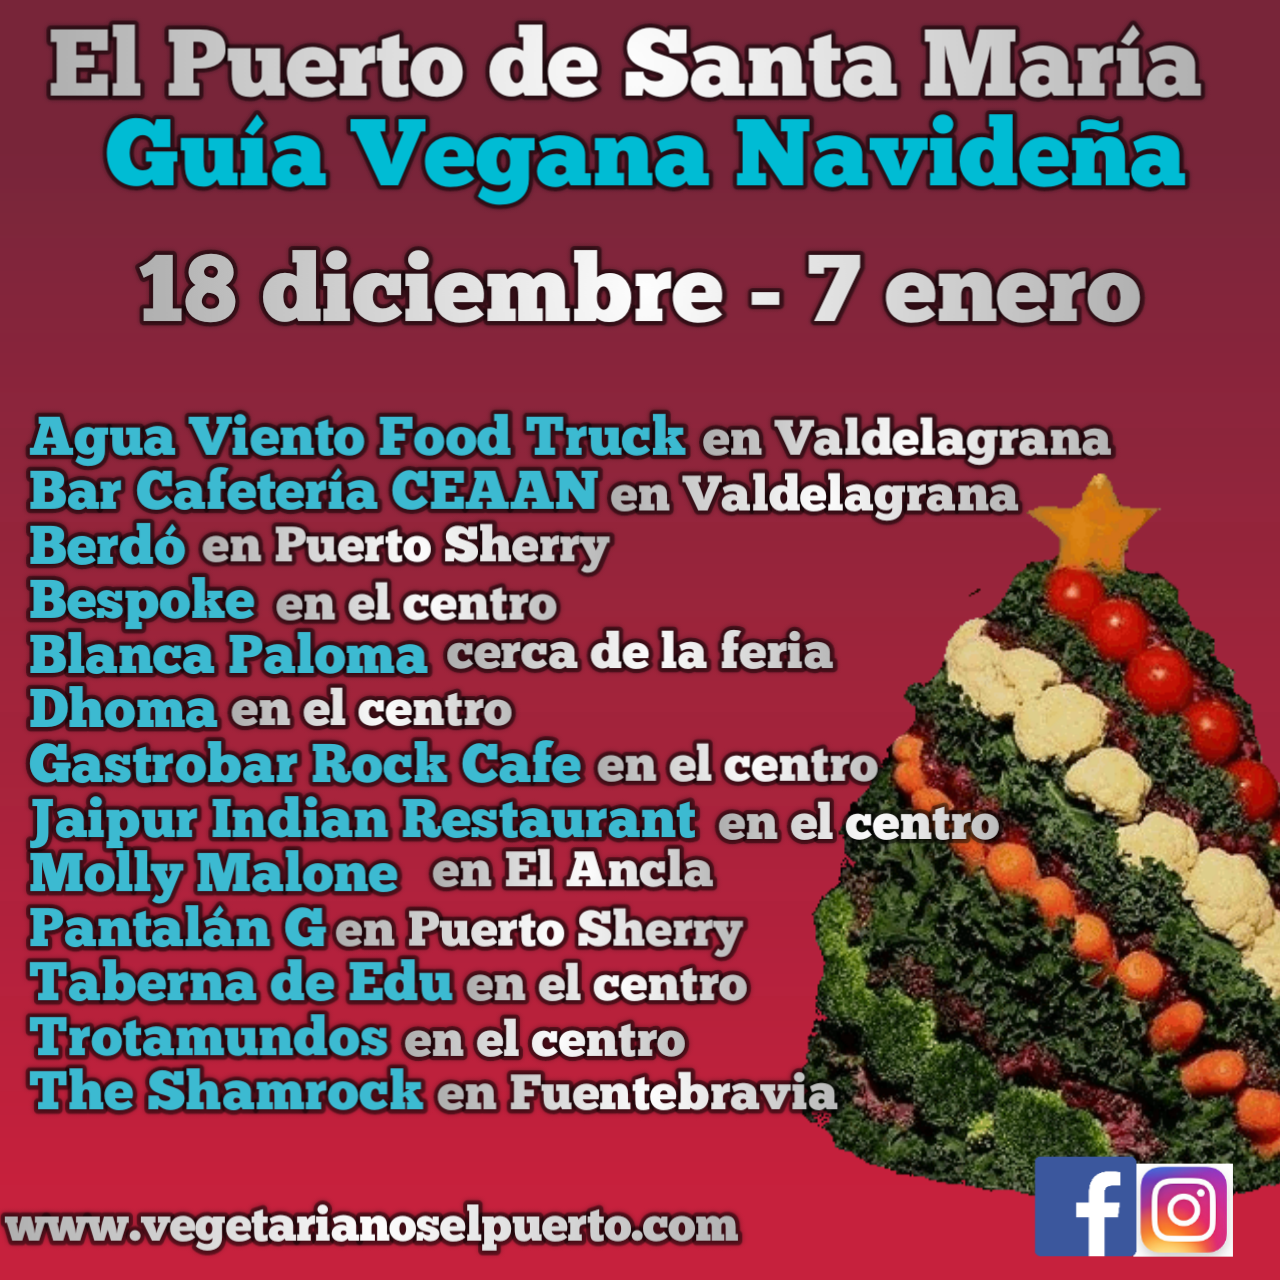 La Guía Vegana Navideña en El Puerto de Santa María.